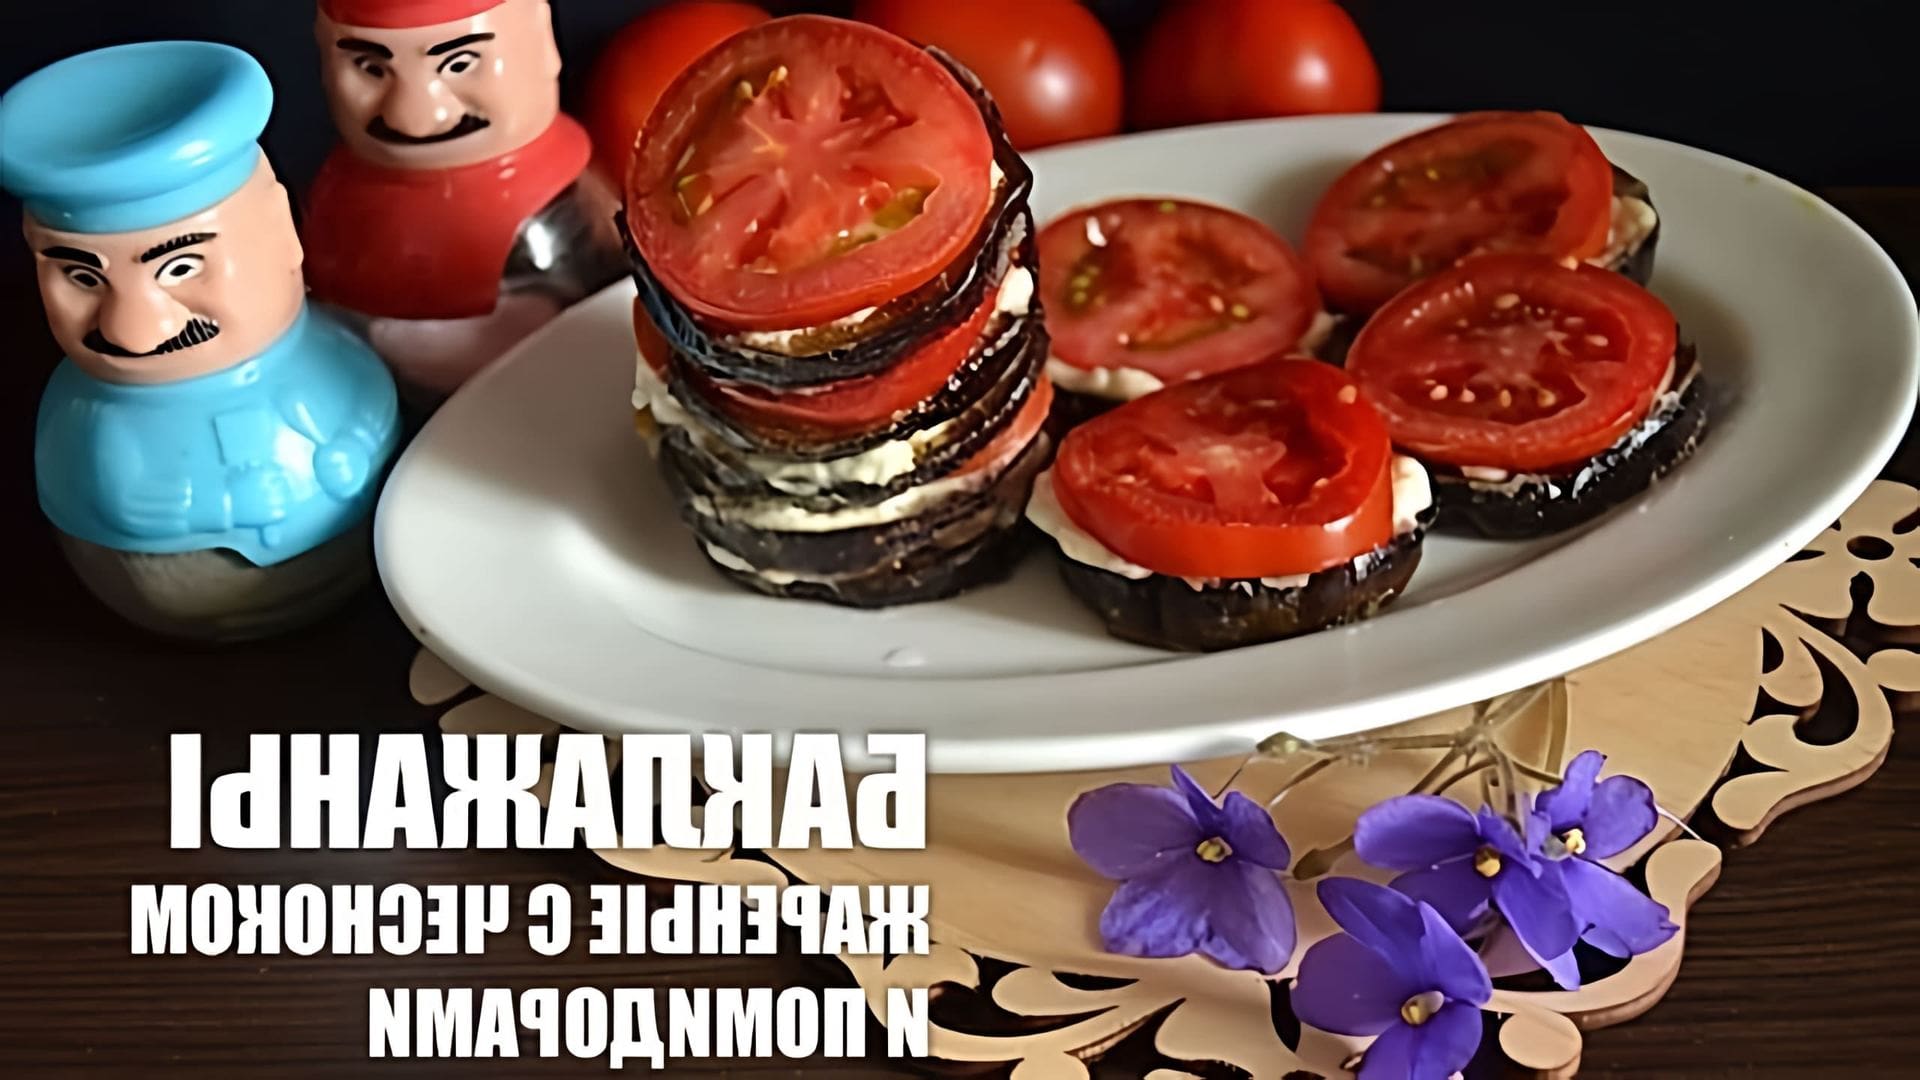 В этом видео демонстрируется рецепт приготовления жареных баклажанов с чесноком и помидорами